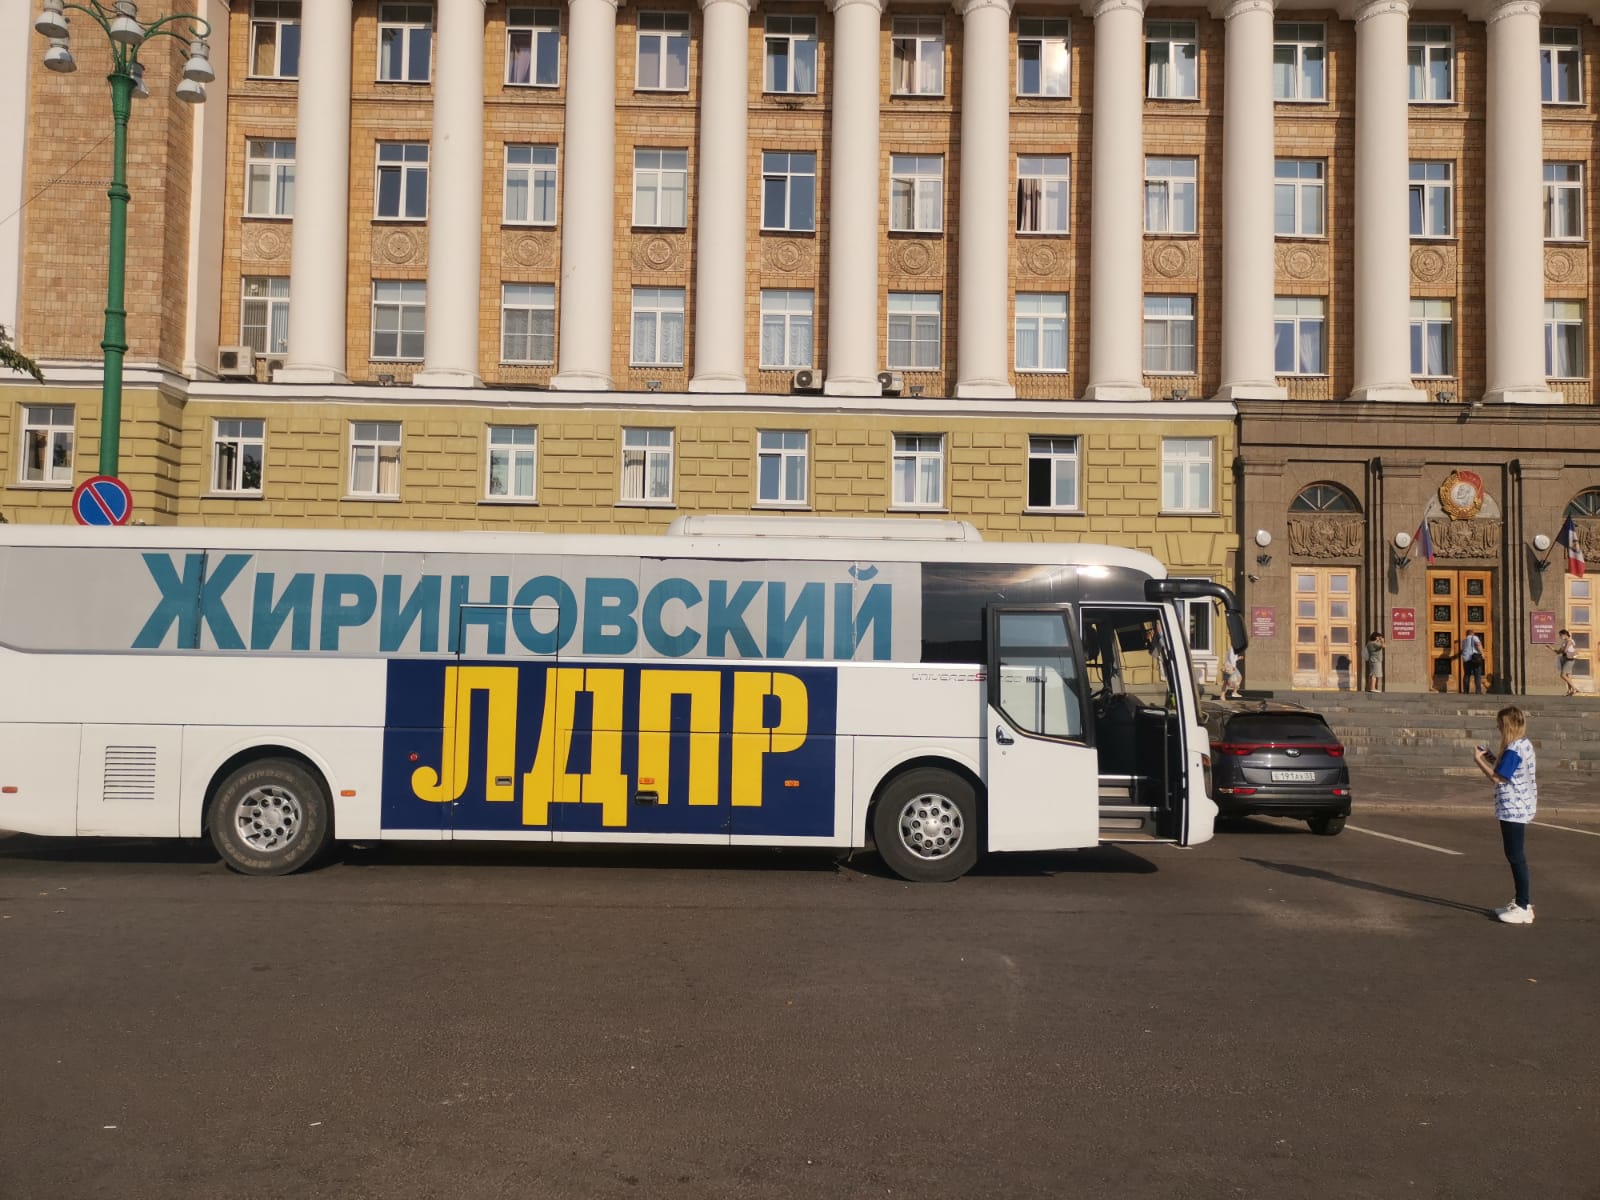 Автобус доброе 1. Автобусы Великий Новгород.